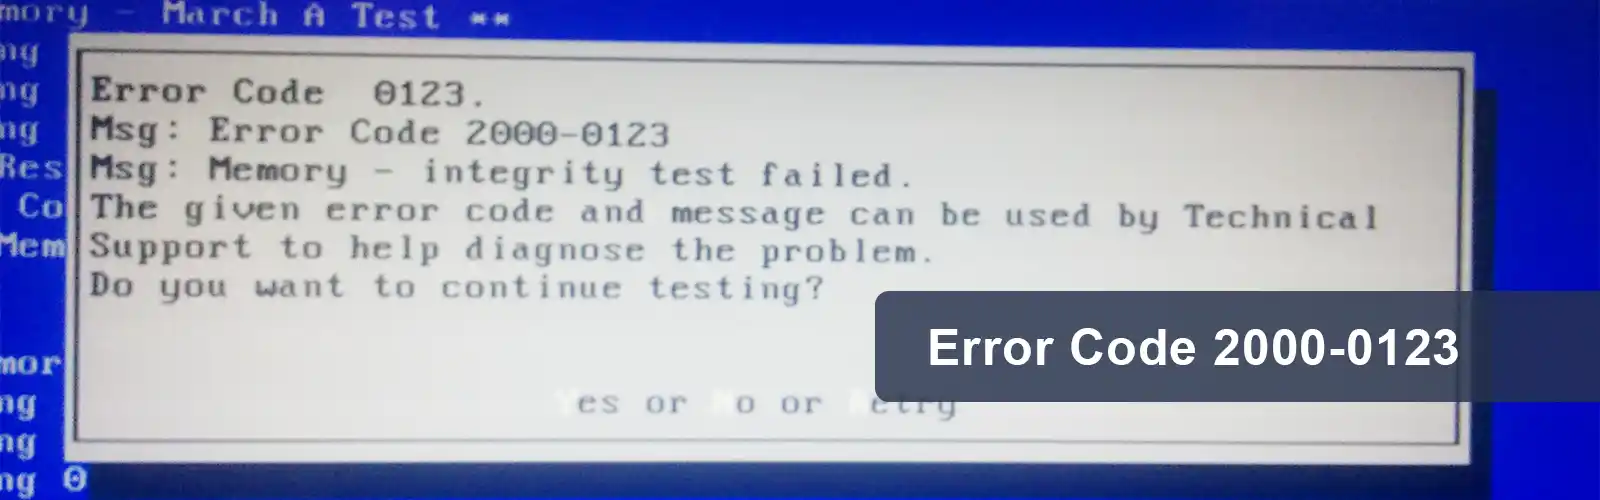 Error Code 2000-0123